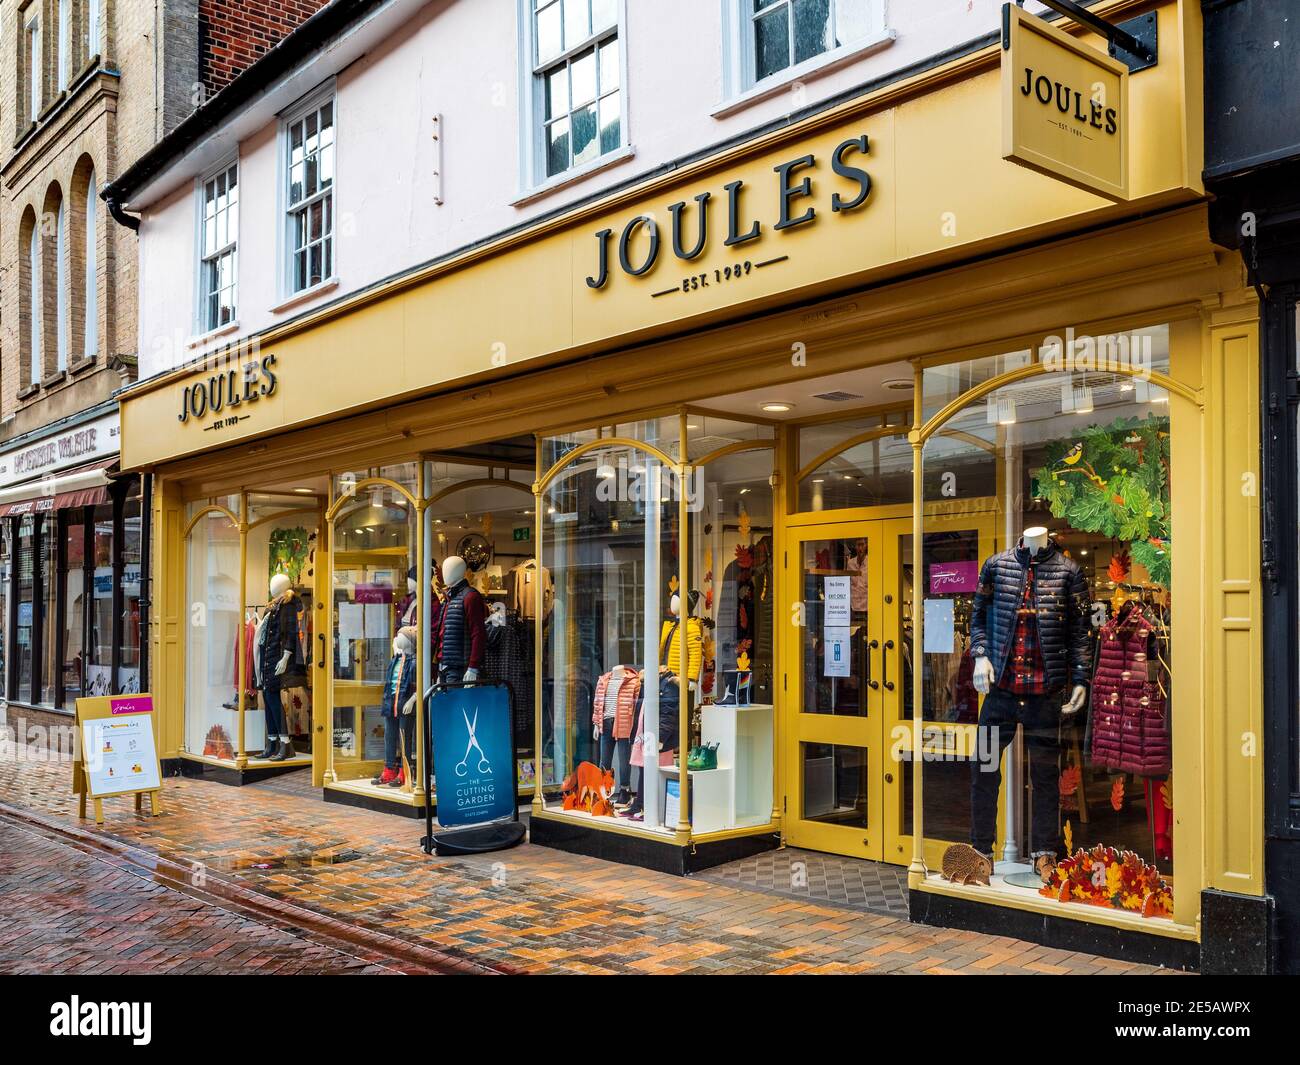 Joules Store - Joules Shop à Ipswich UK - Joules est une chaîne de vêtements  basée au Royaume-Uni qui vend des vêtements de style de vie de pays. Fondée  en 1989 par